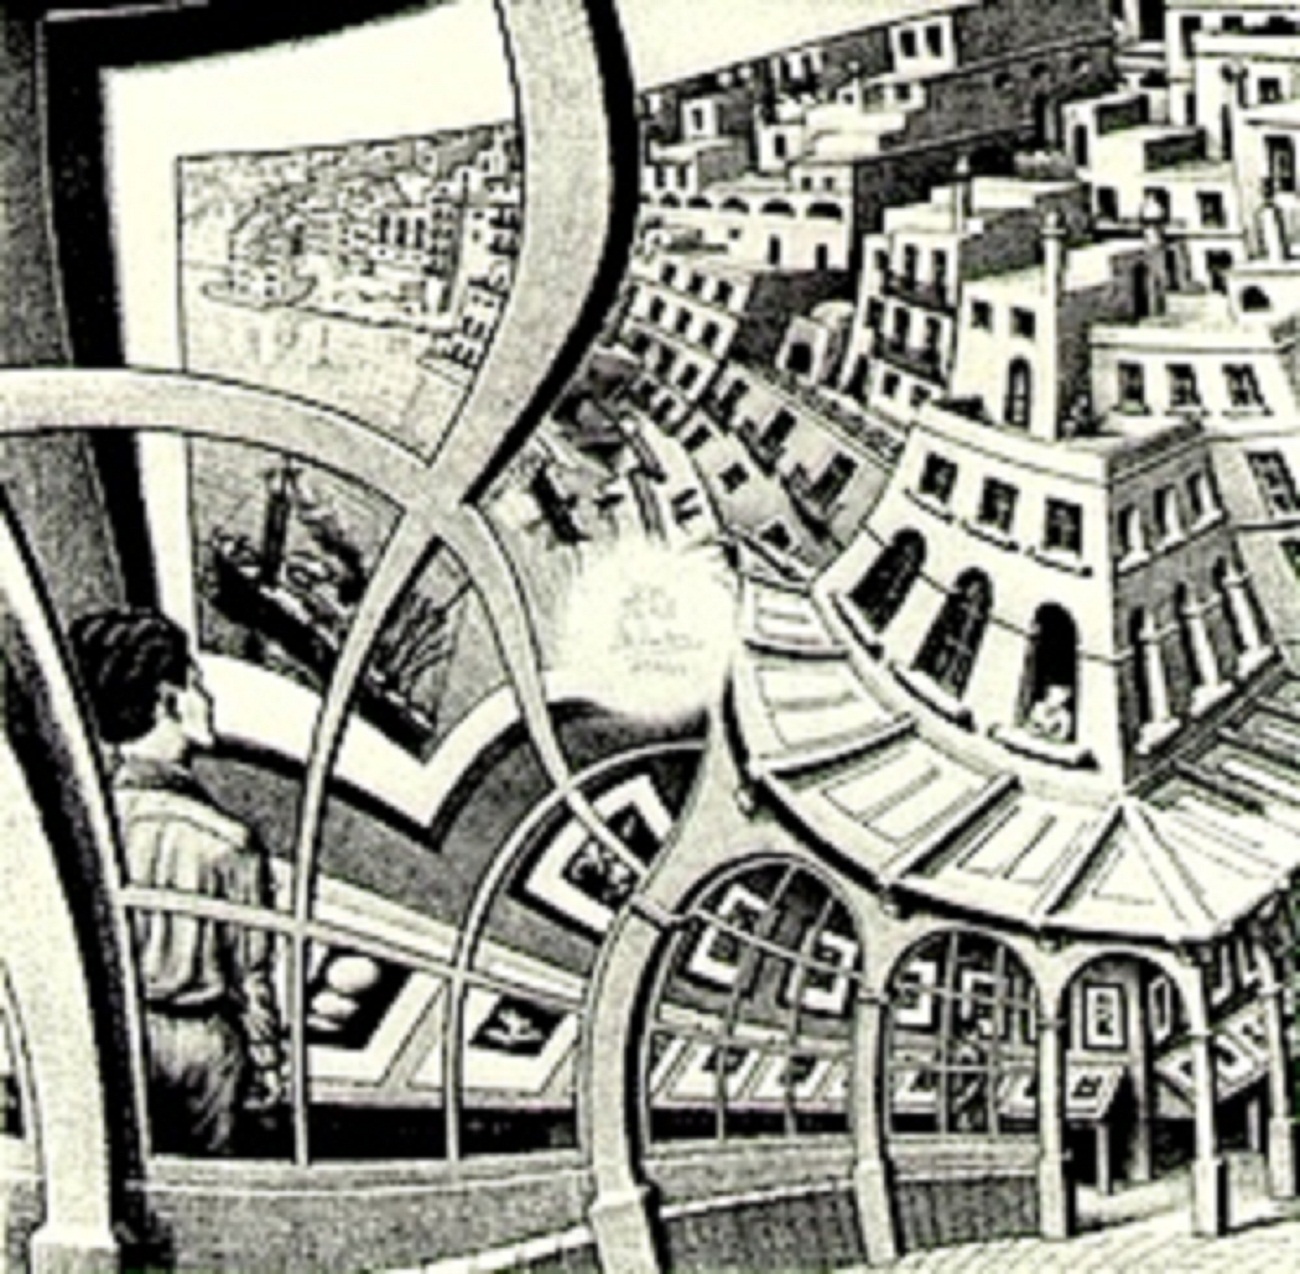 M.C. Escher warped perspective.